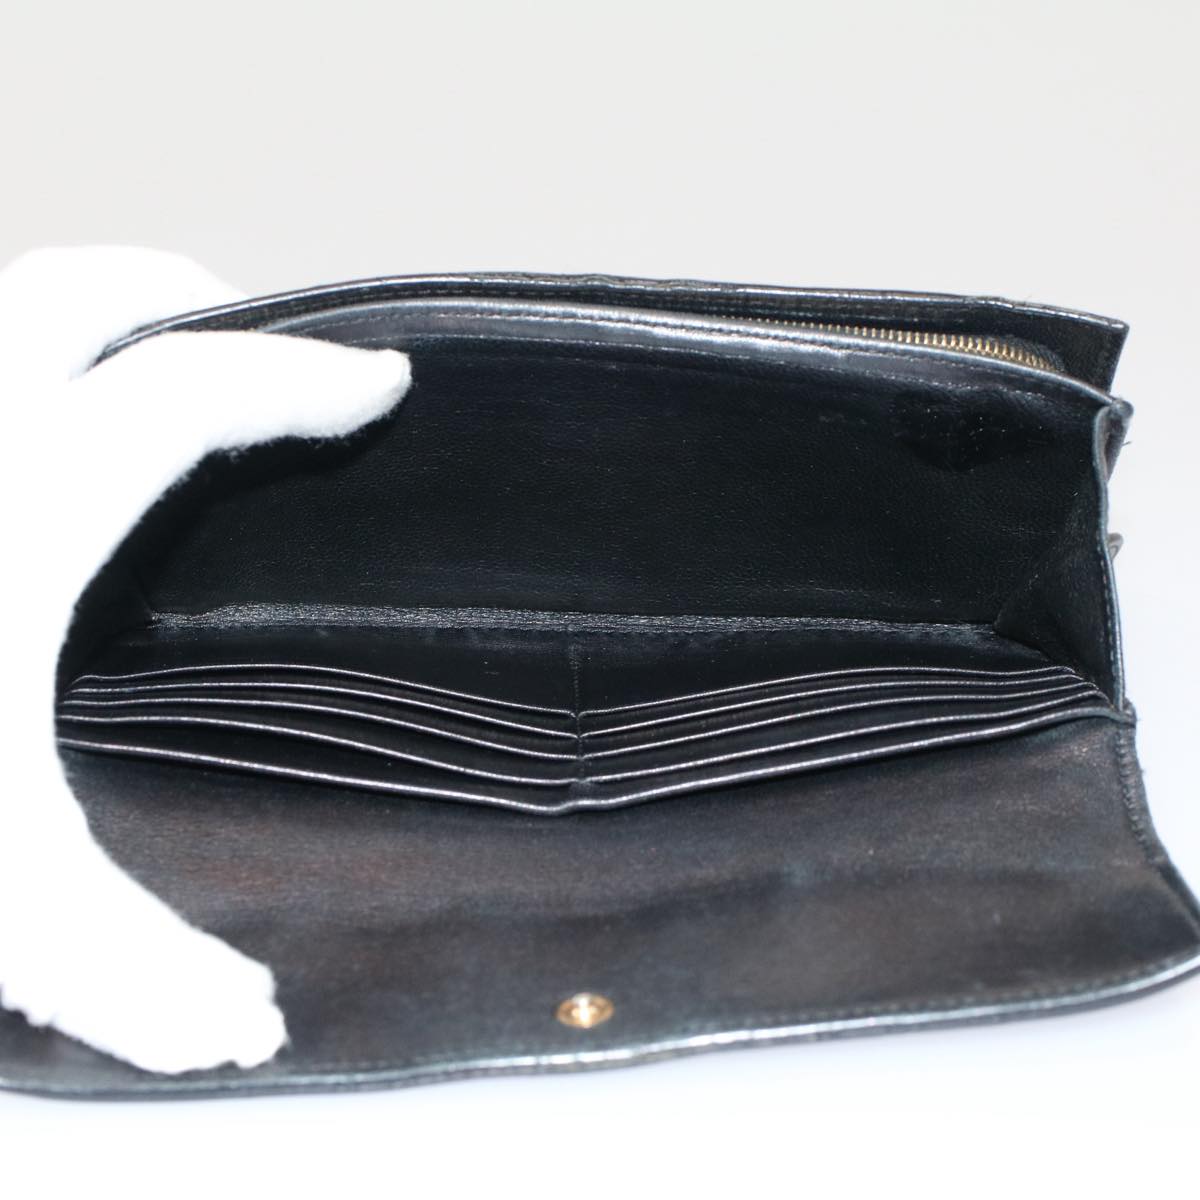 BOTTEGAVENETA INTRECCIATO Wallet Leather 4Set Black Brown Auth bs8073